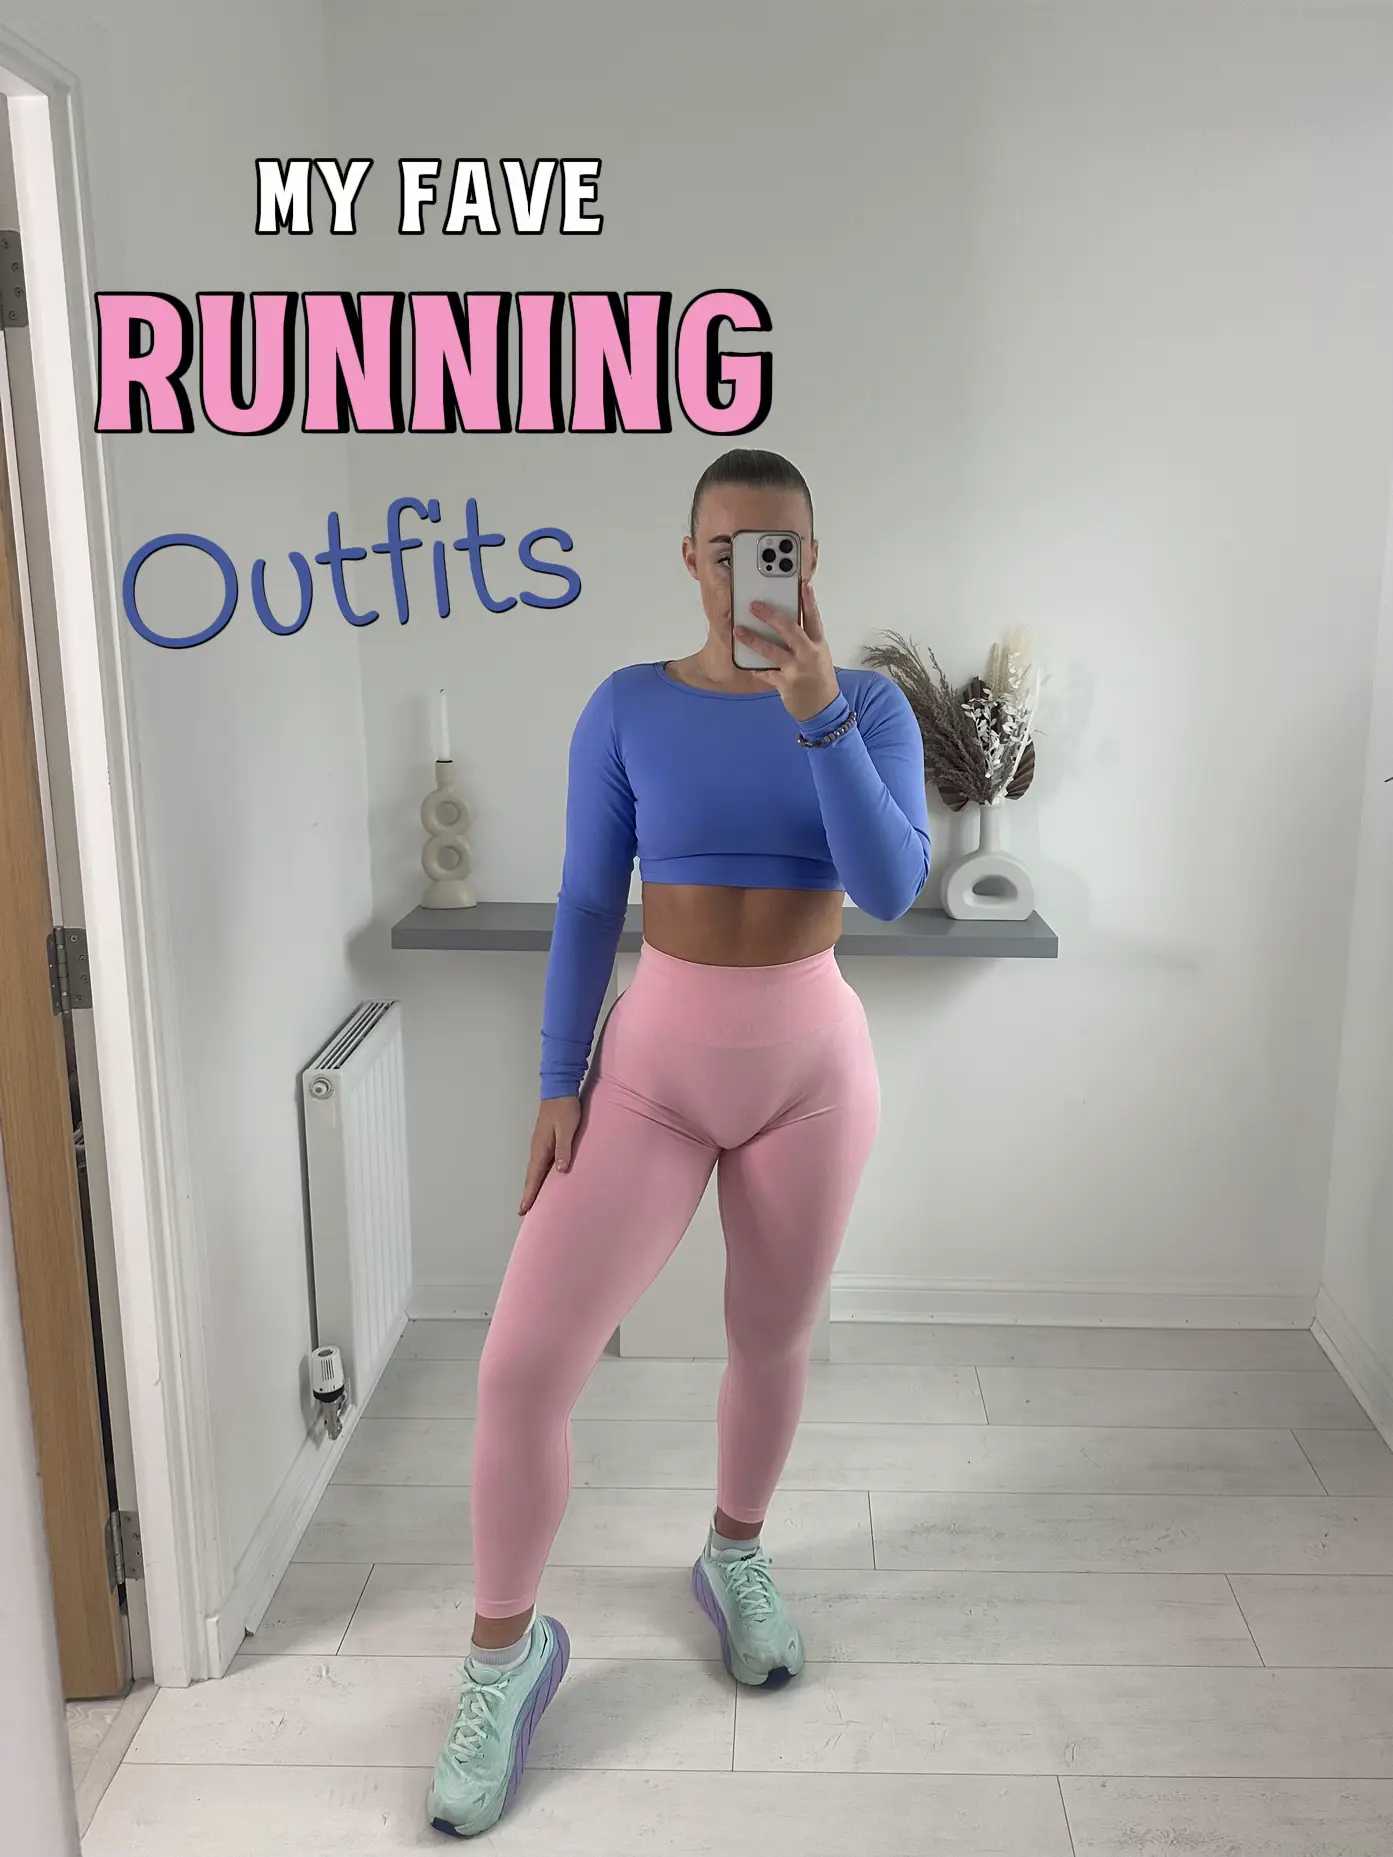 Running OOTD is giving bada$ runner girl vibes